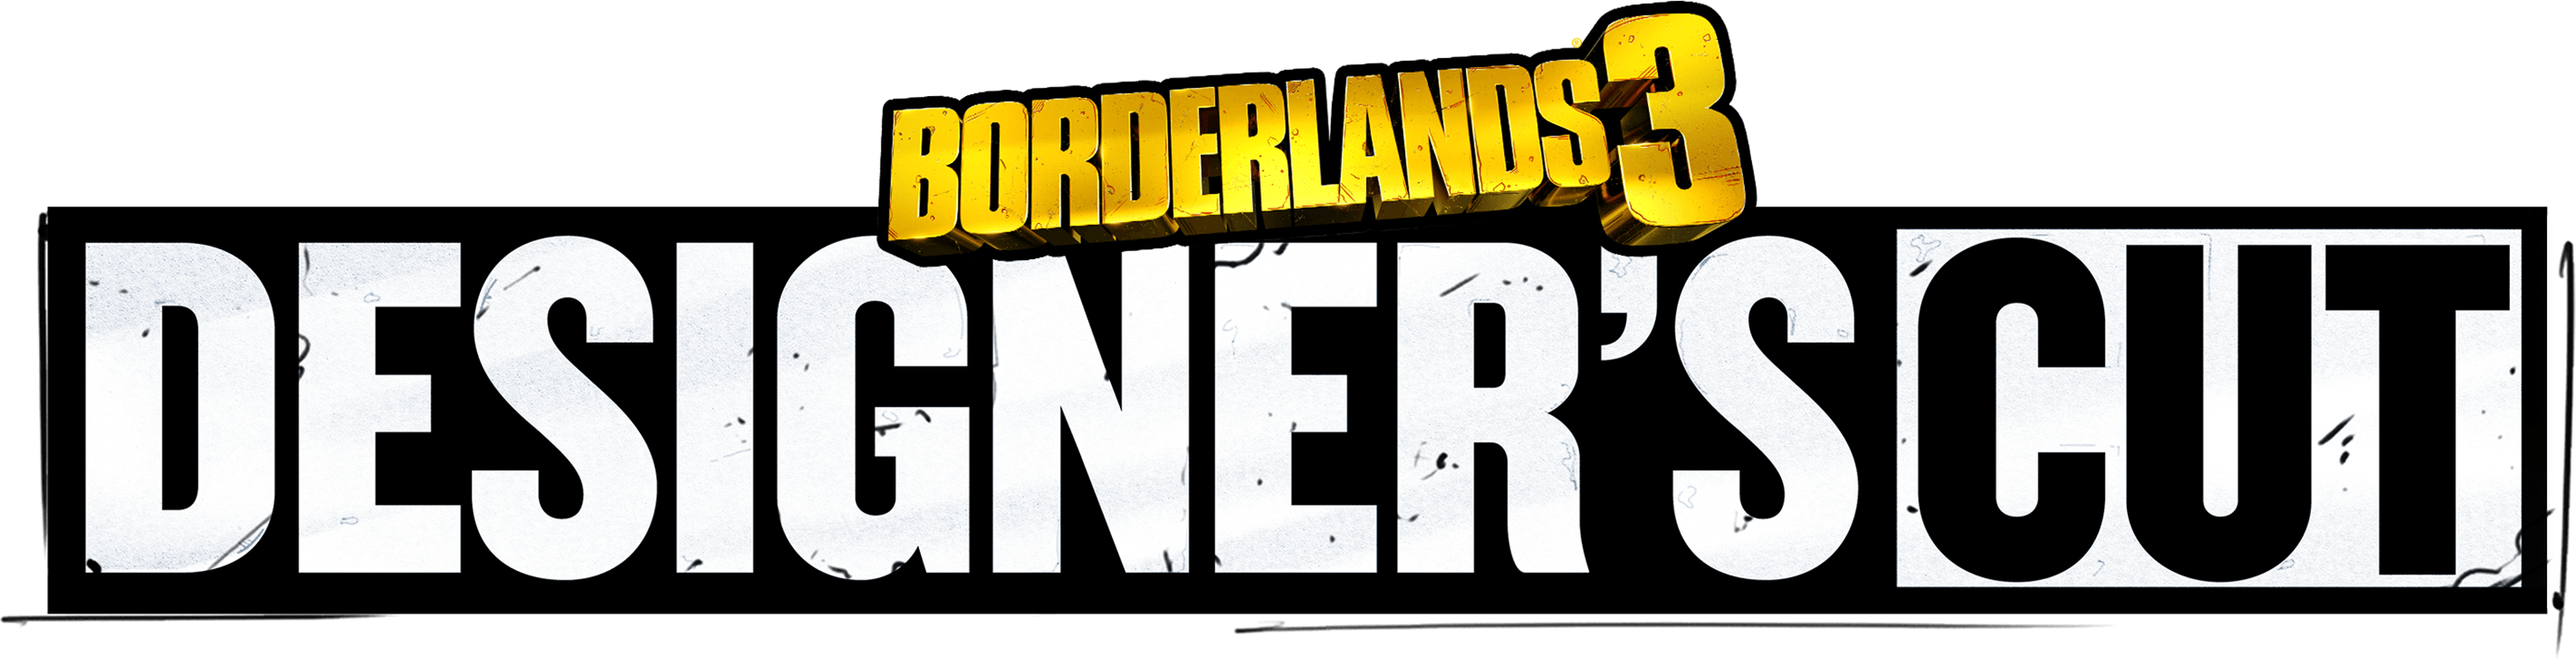 دانلود بازی Borderlands 3 برای کامپیوتر | گیمباتو